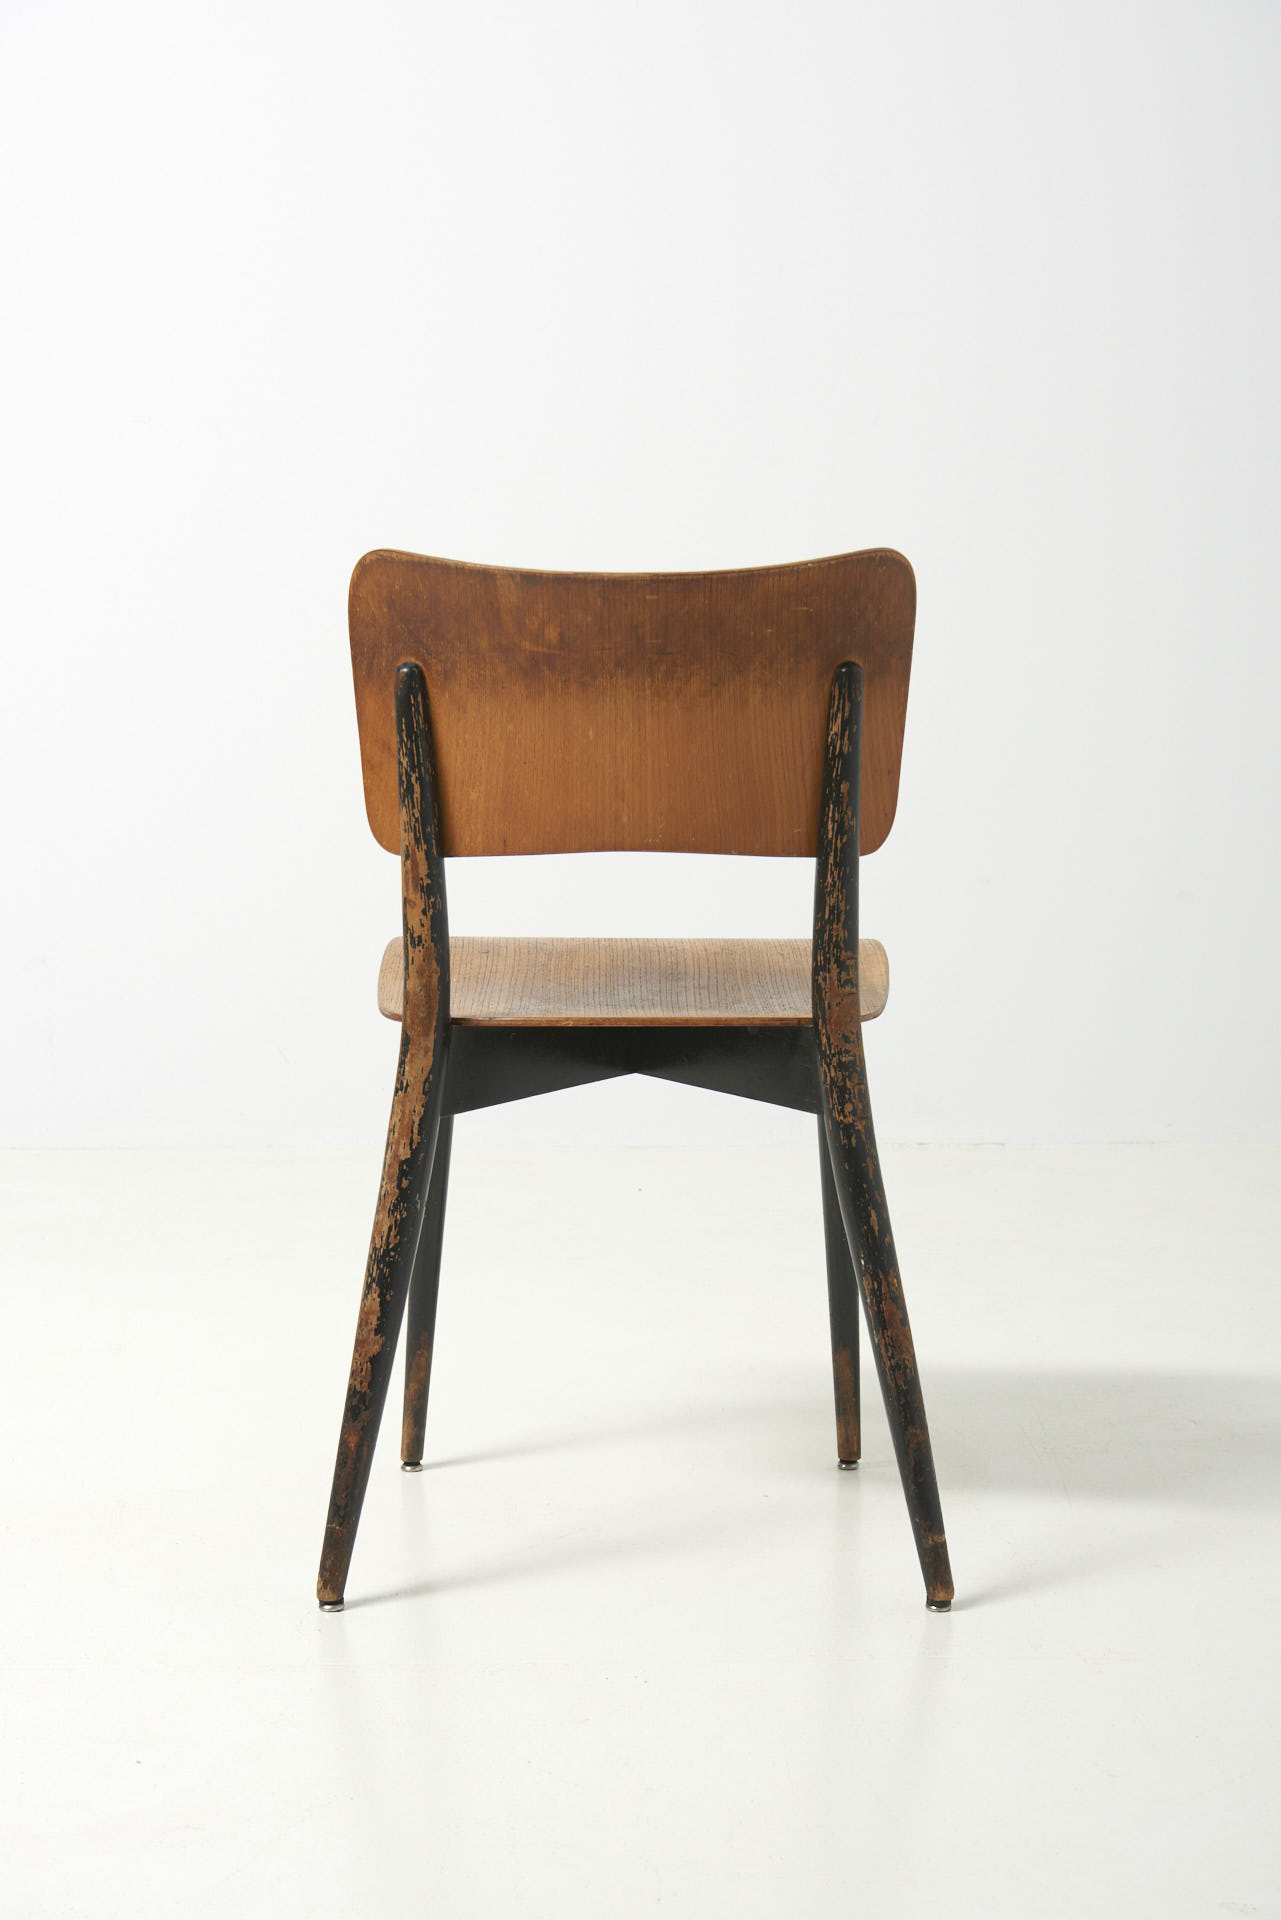 modestfurniture-vintage-3135-max-bill-chair-horgen-glarus-switzerland05